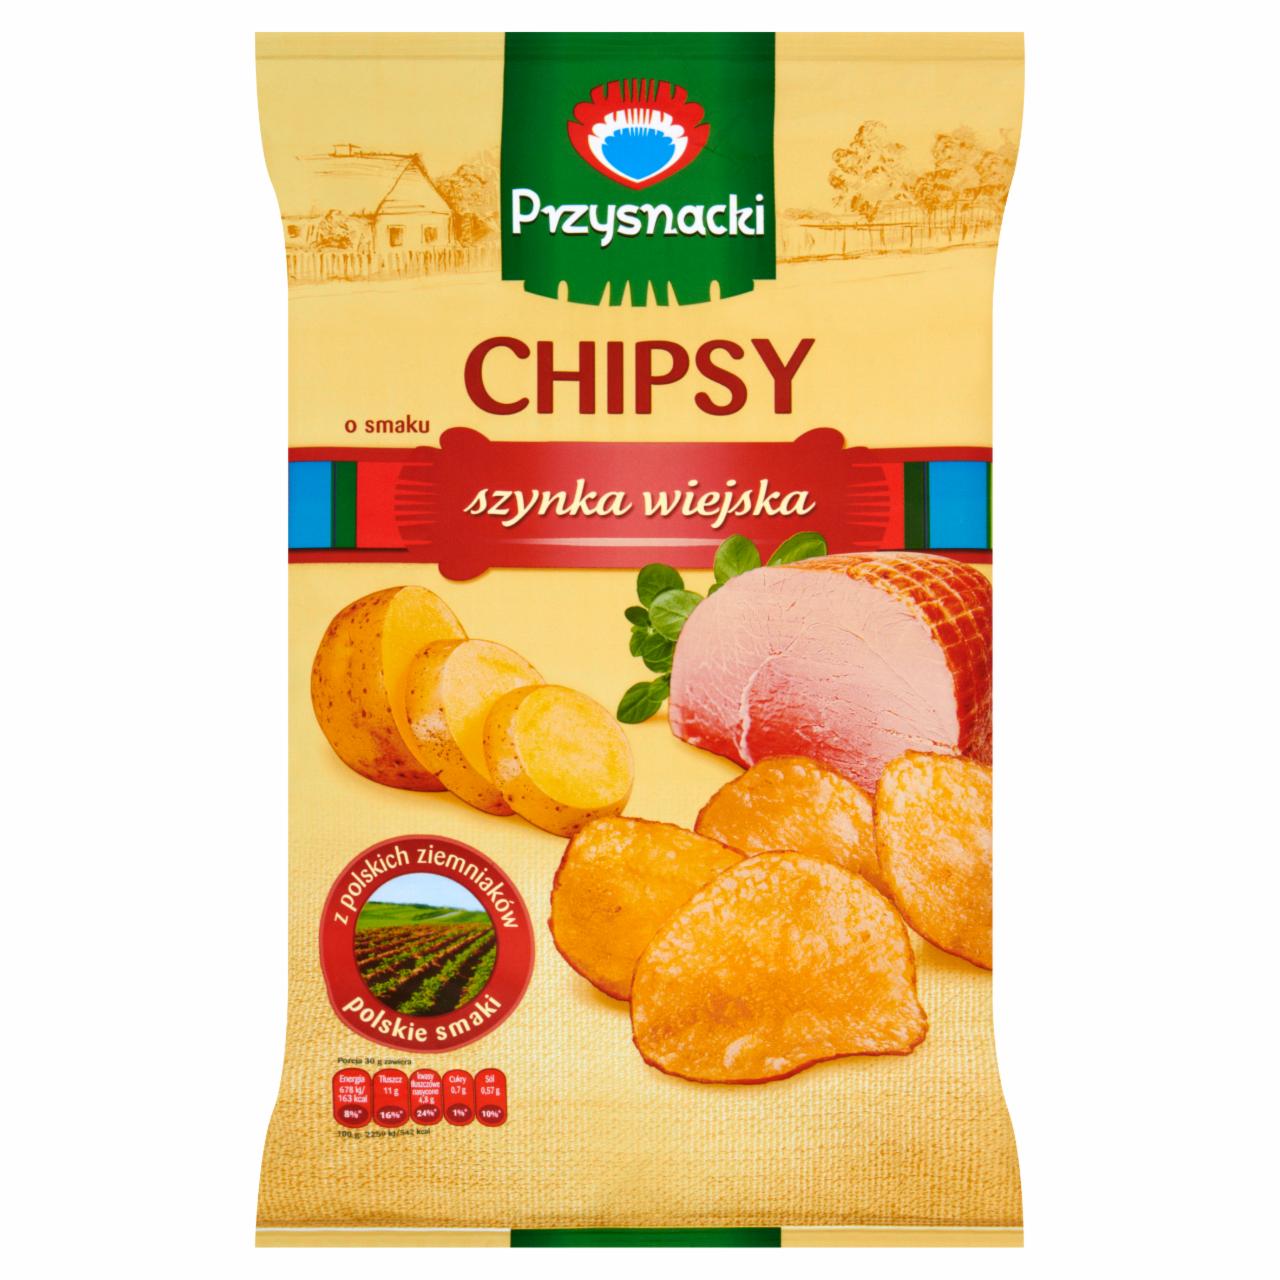 Zdjęcia - Przysnacki Chipsy o smaku szynka wiejska 135 g